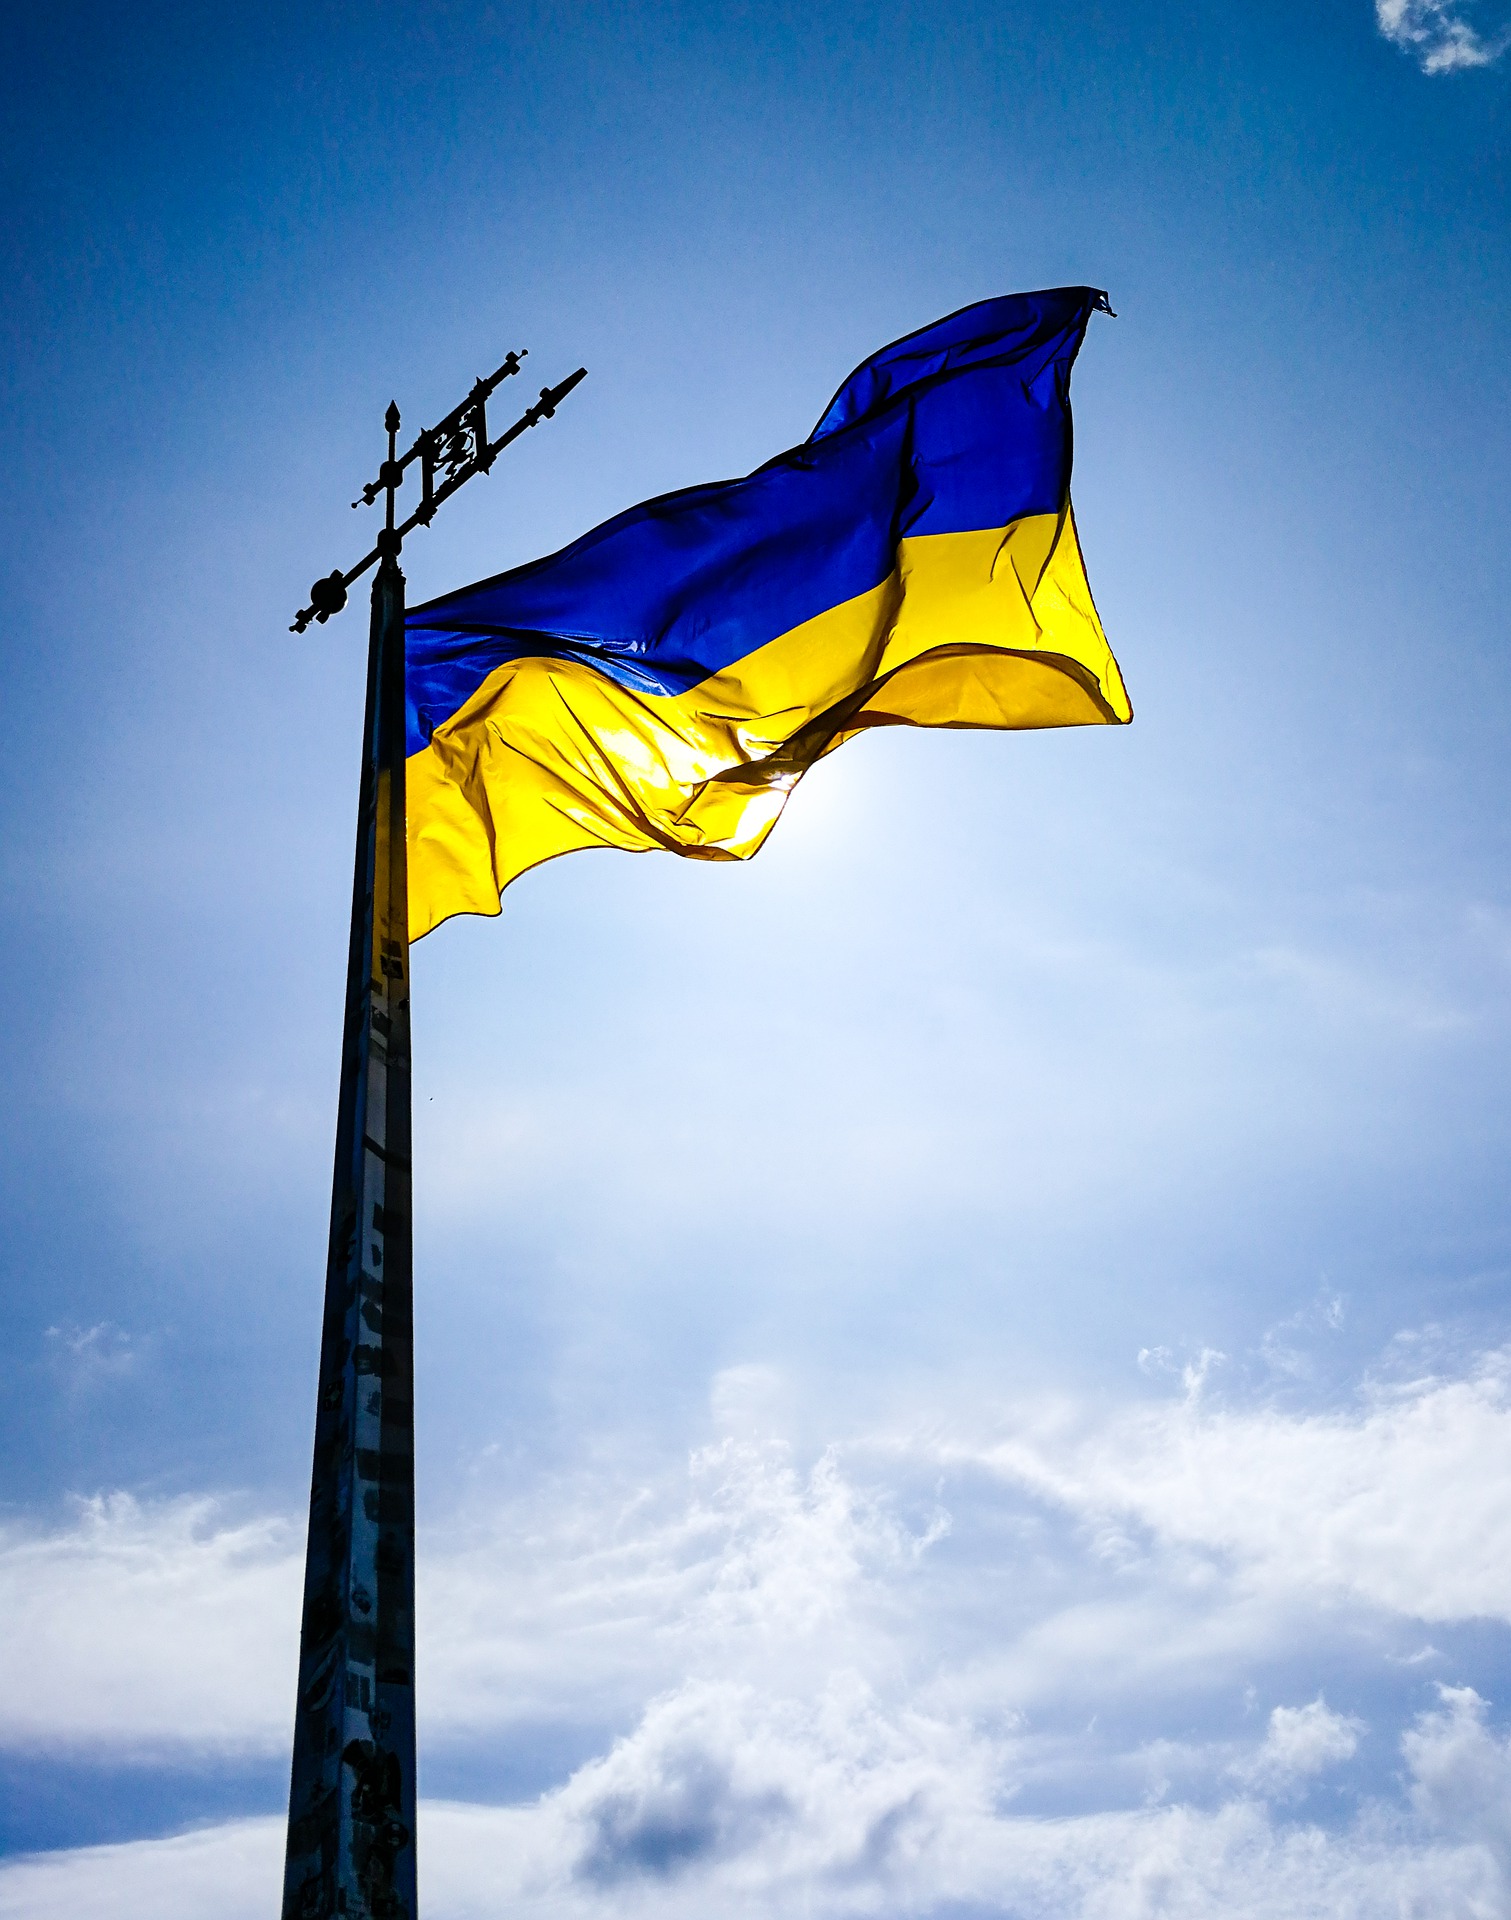 Evolutia afacerilor in Ucraina: Anunt catre clientii si partenerii nostri